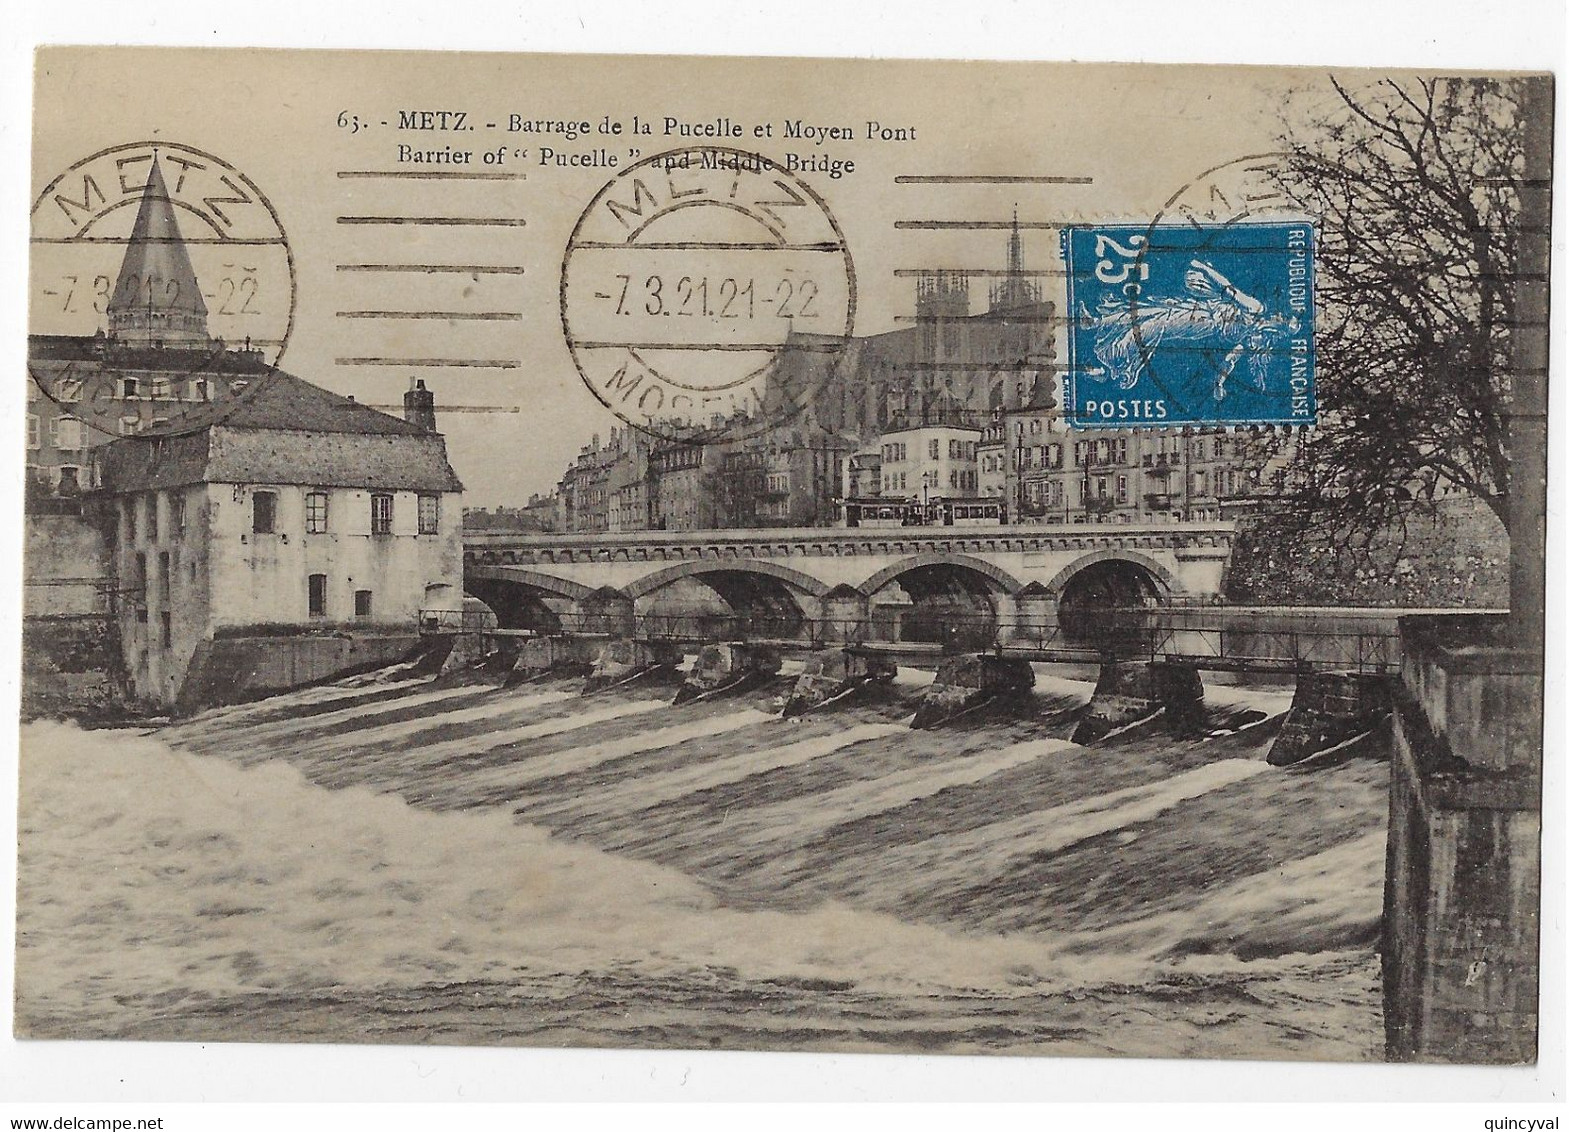 METZ Moselle Carte Postale 25c Semeuse Yv 140 Ob 7 3 1921 Krag Francisée MET111 - Mechanical Postmarks (Other)